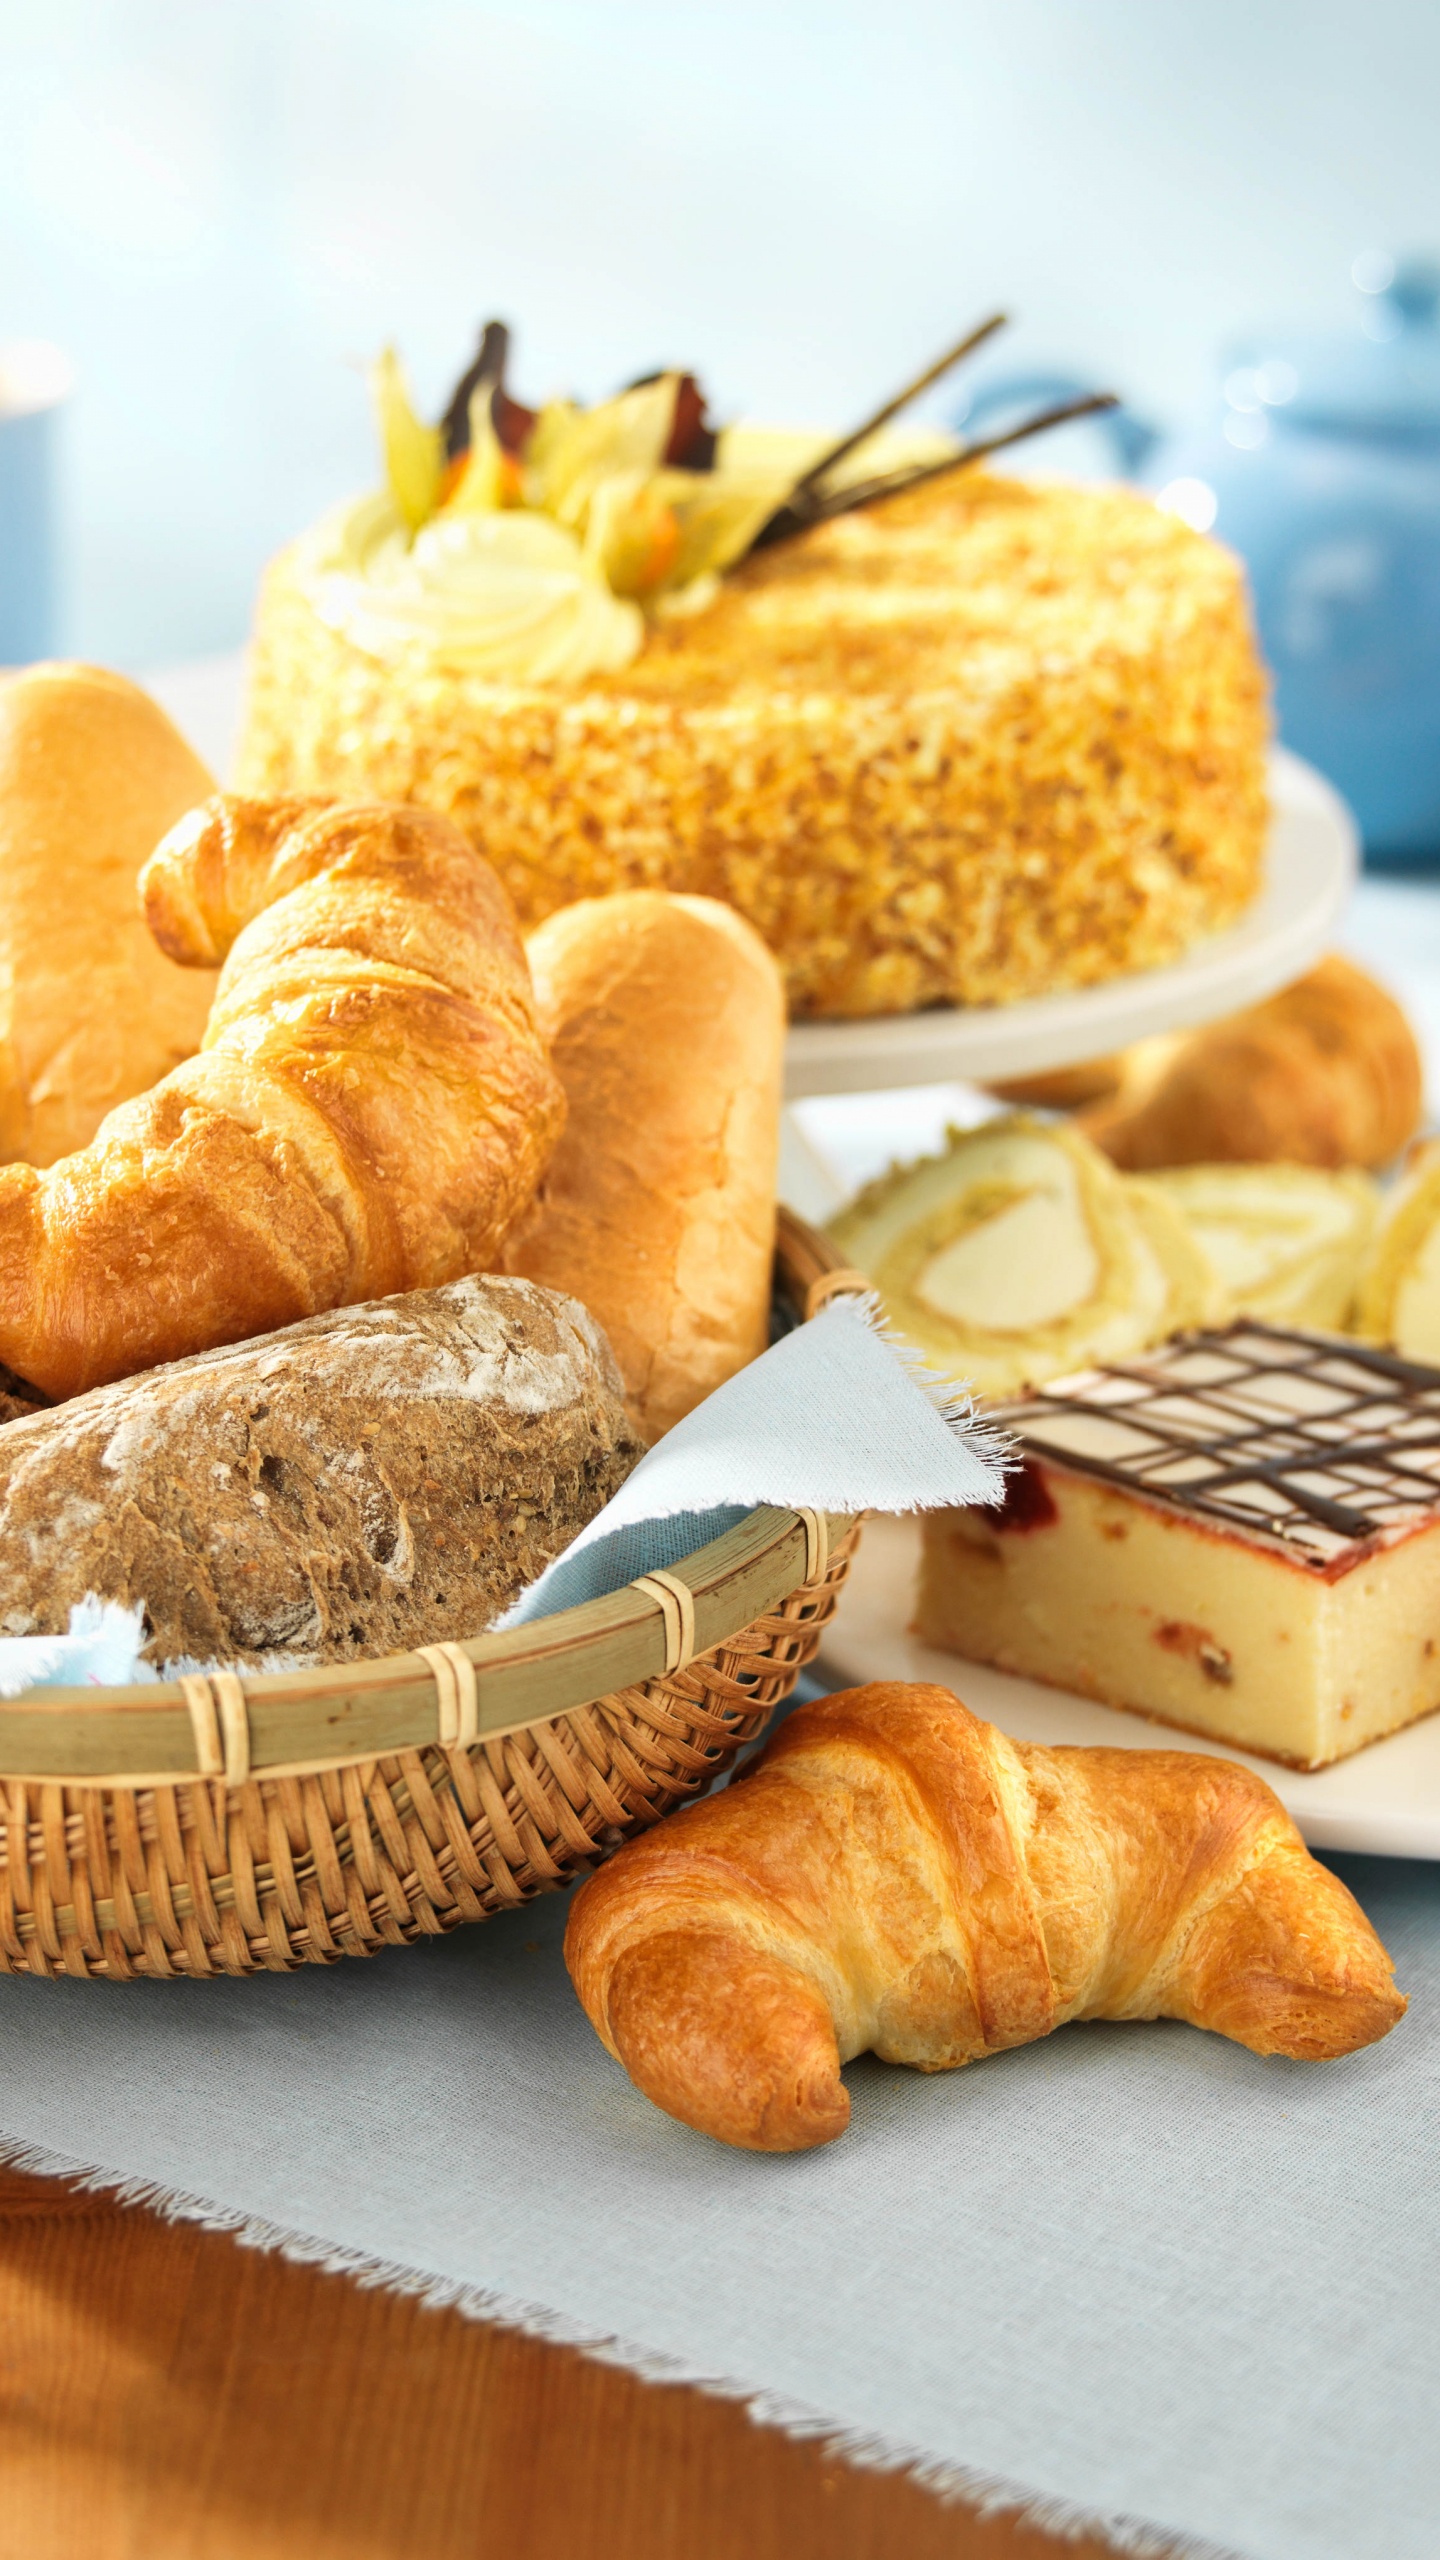 面包店, 牛角面包, 甜点, 糕点, 烘烤 壁纸 1440x2560 允许